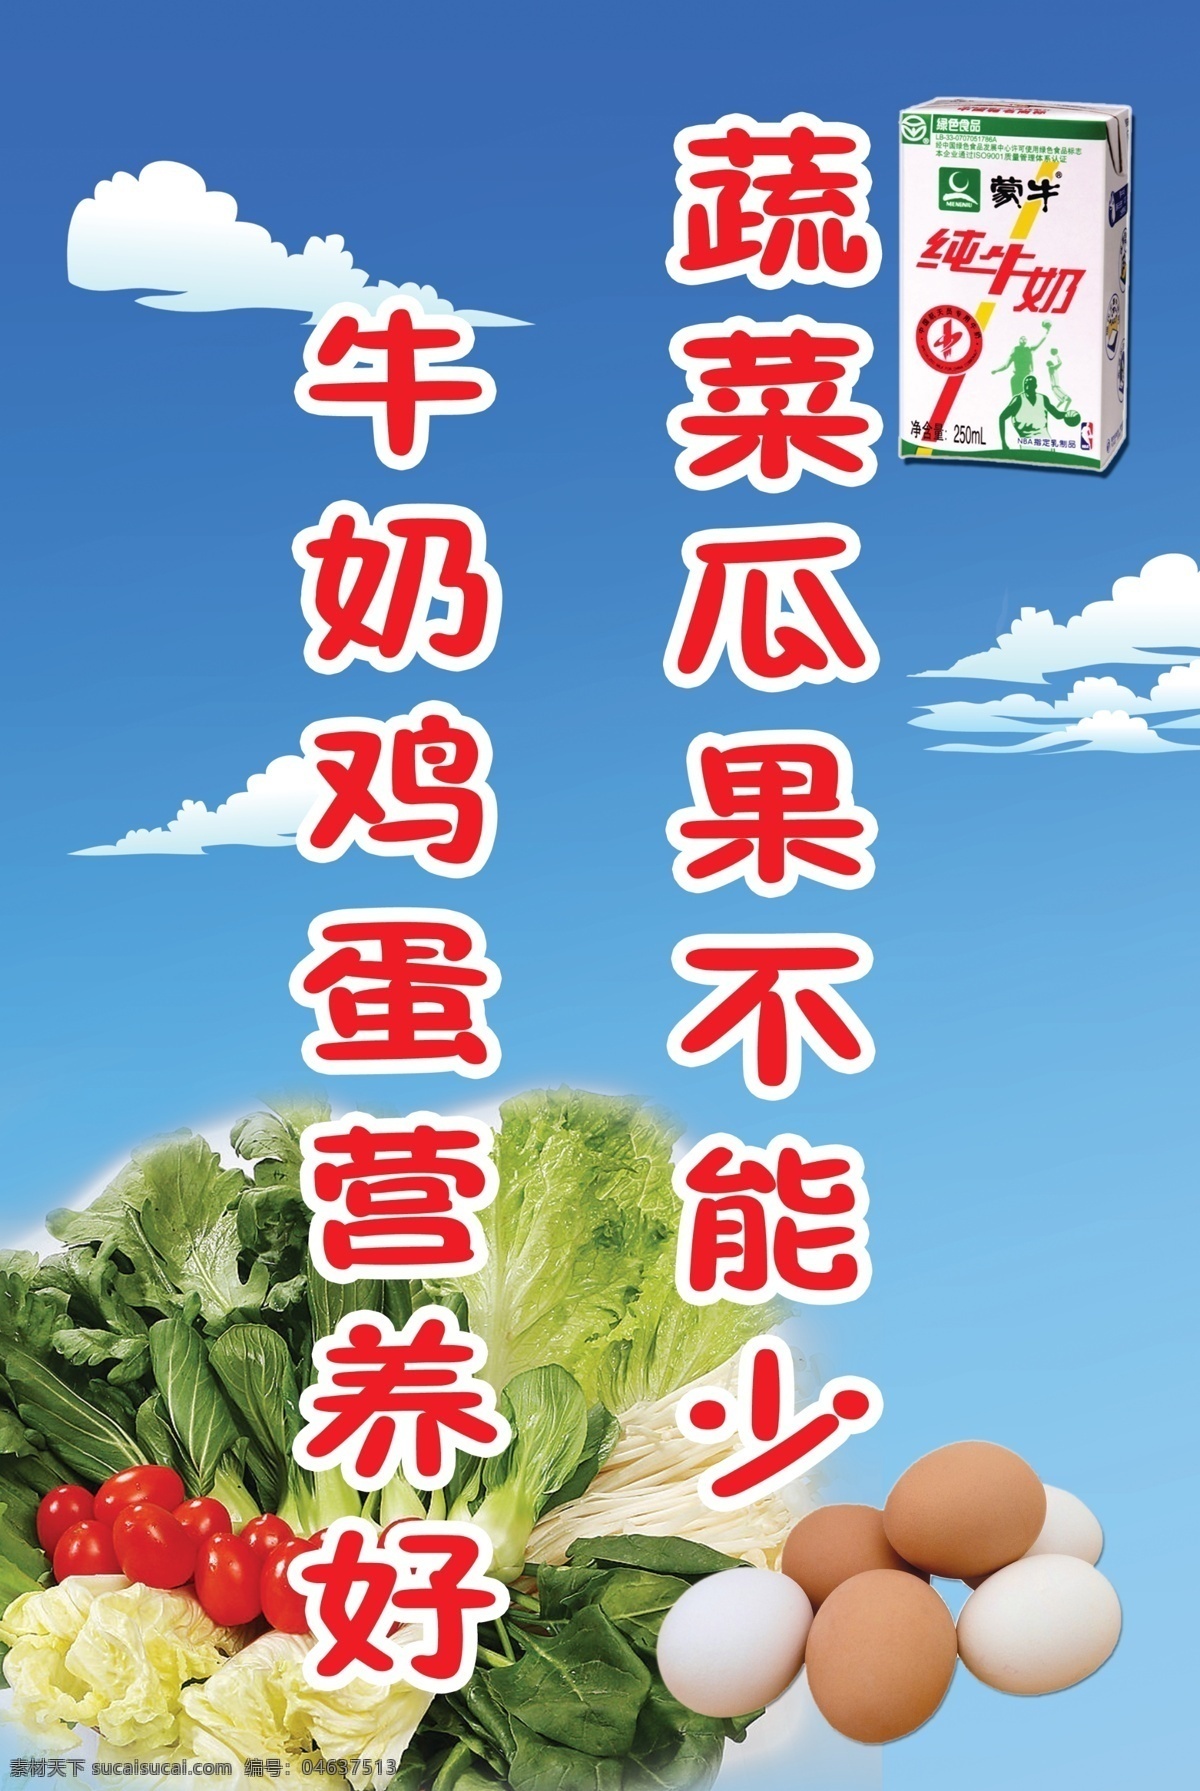 蔬菜 瓜果 不能 少 牛奶 鸡蛋 营养 好 标语 用餐标语 营养标语 饭堂标语 国内广告设计 广告设计模板 源文件